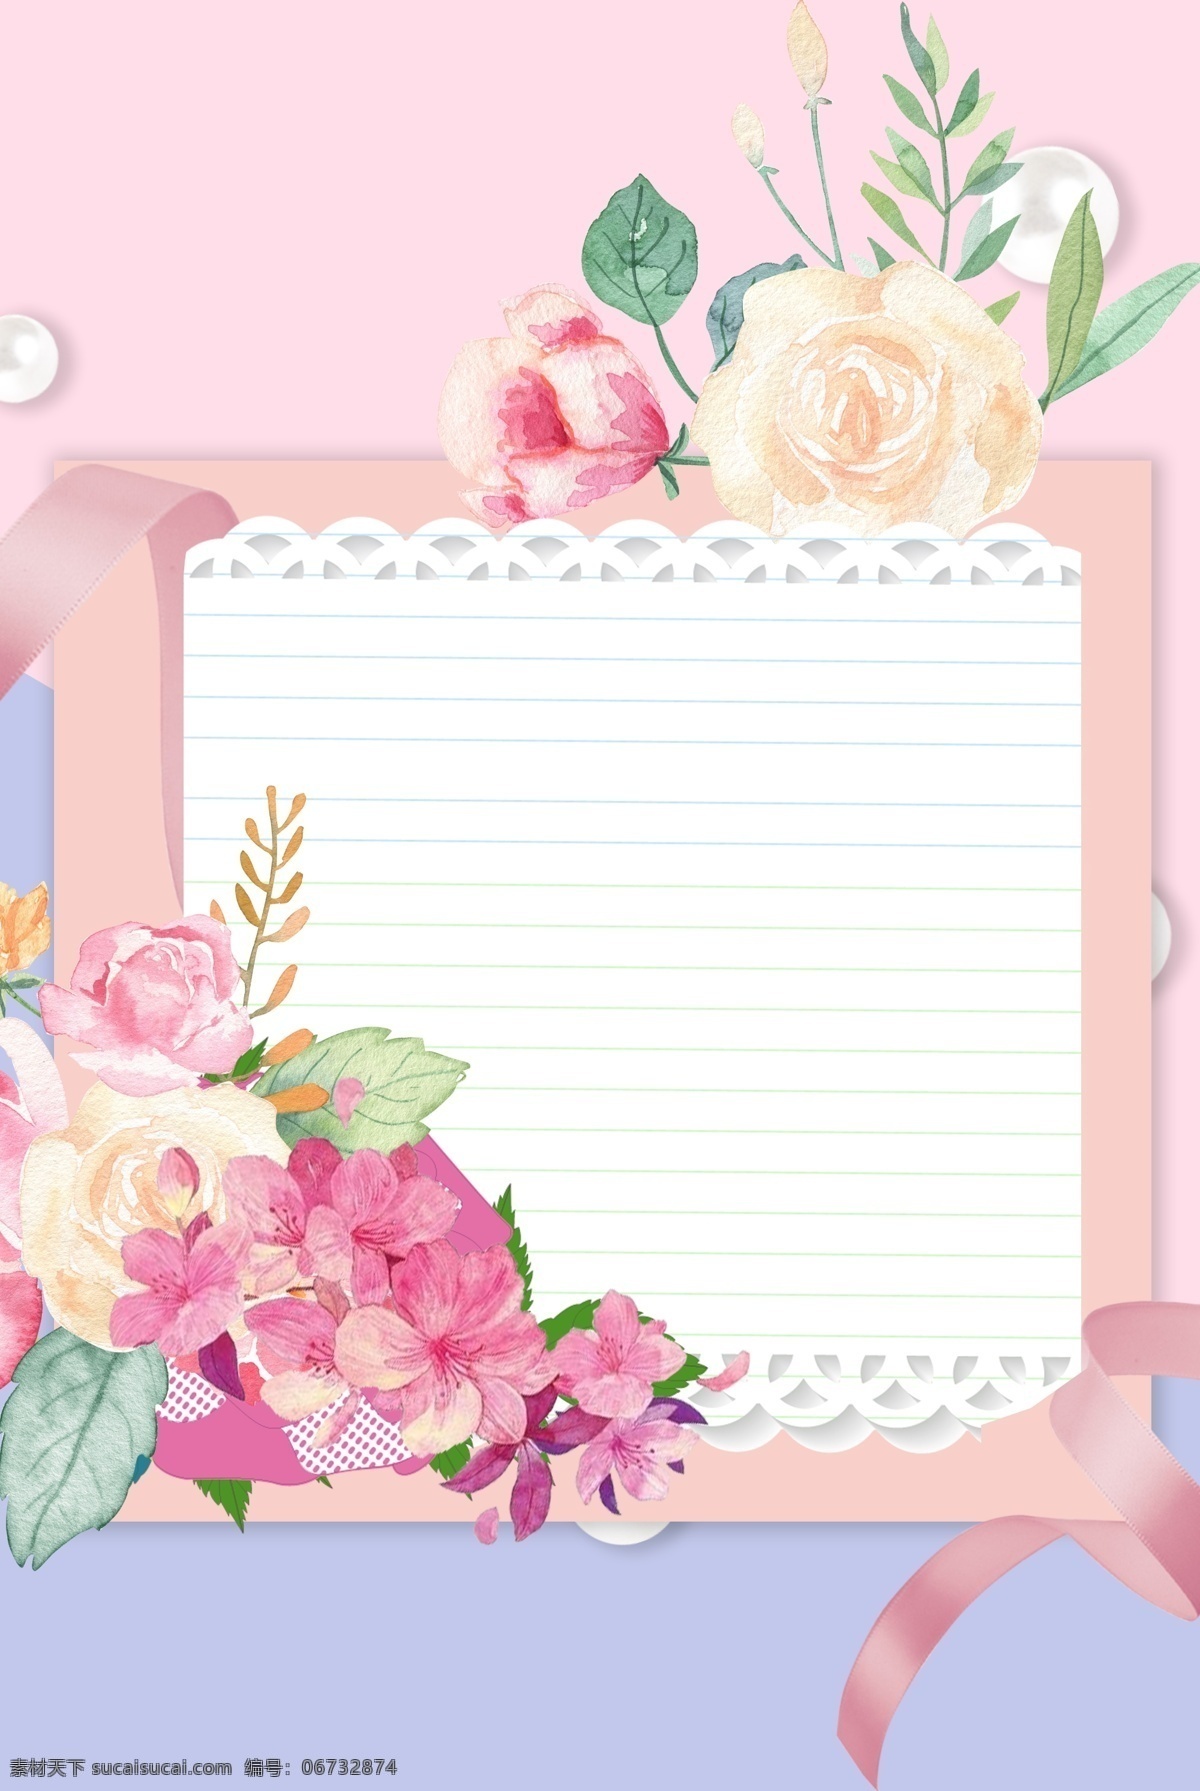 彩色 信纸 花朵 彩带 背景 粉色 卡通 浪漫 甜美 可爱 清新 文艺 信封 信件 贺卡